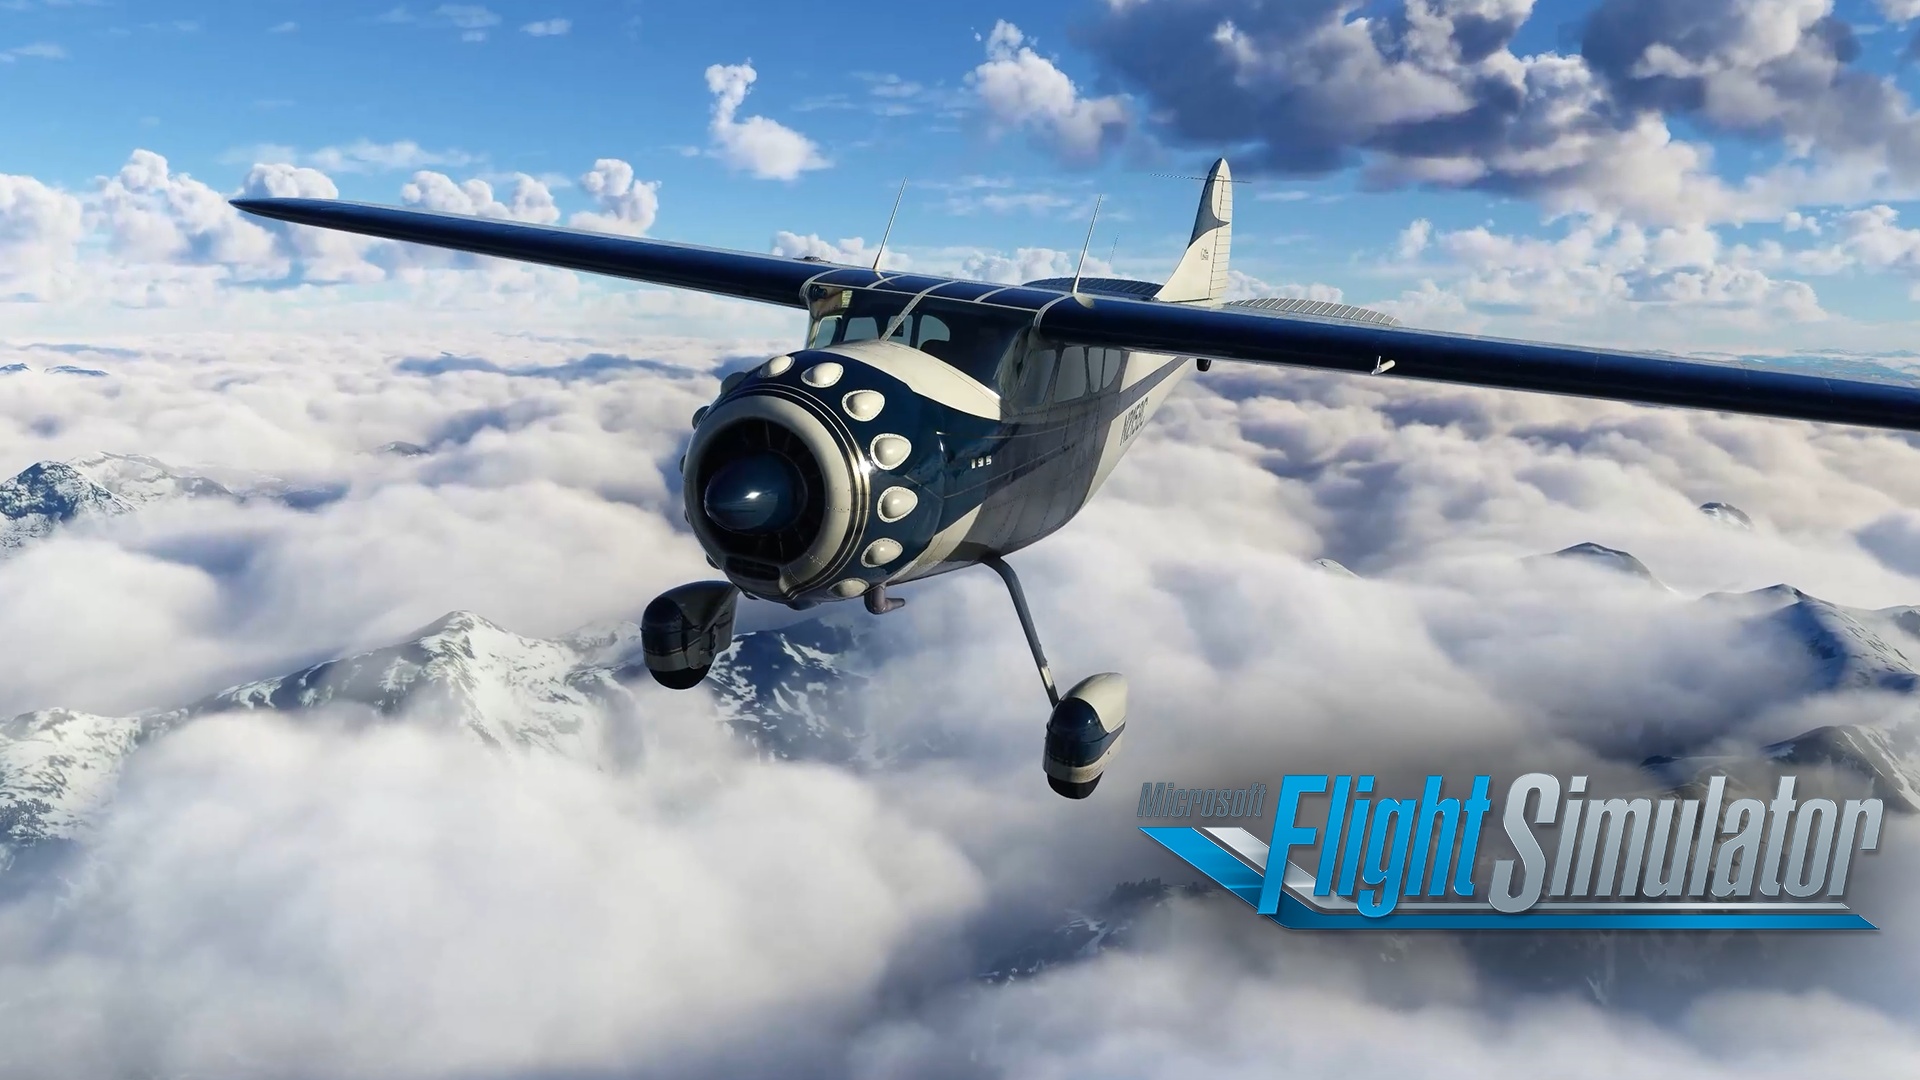 La septième Légende Locale de Microsoft Flight Simulator, le Cessna 195 Businessliner, est disponible